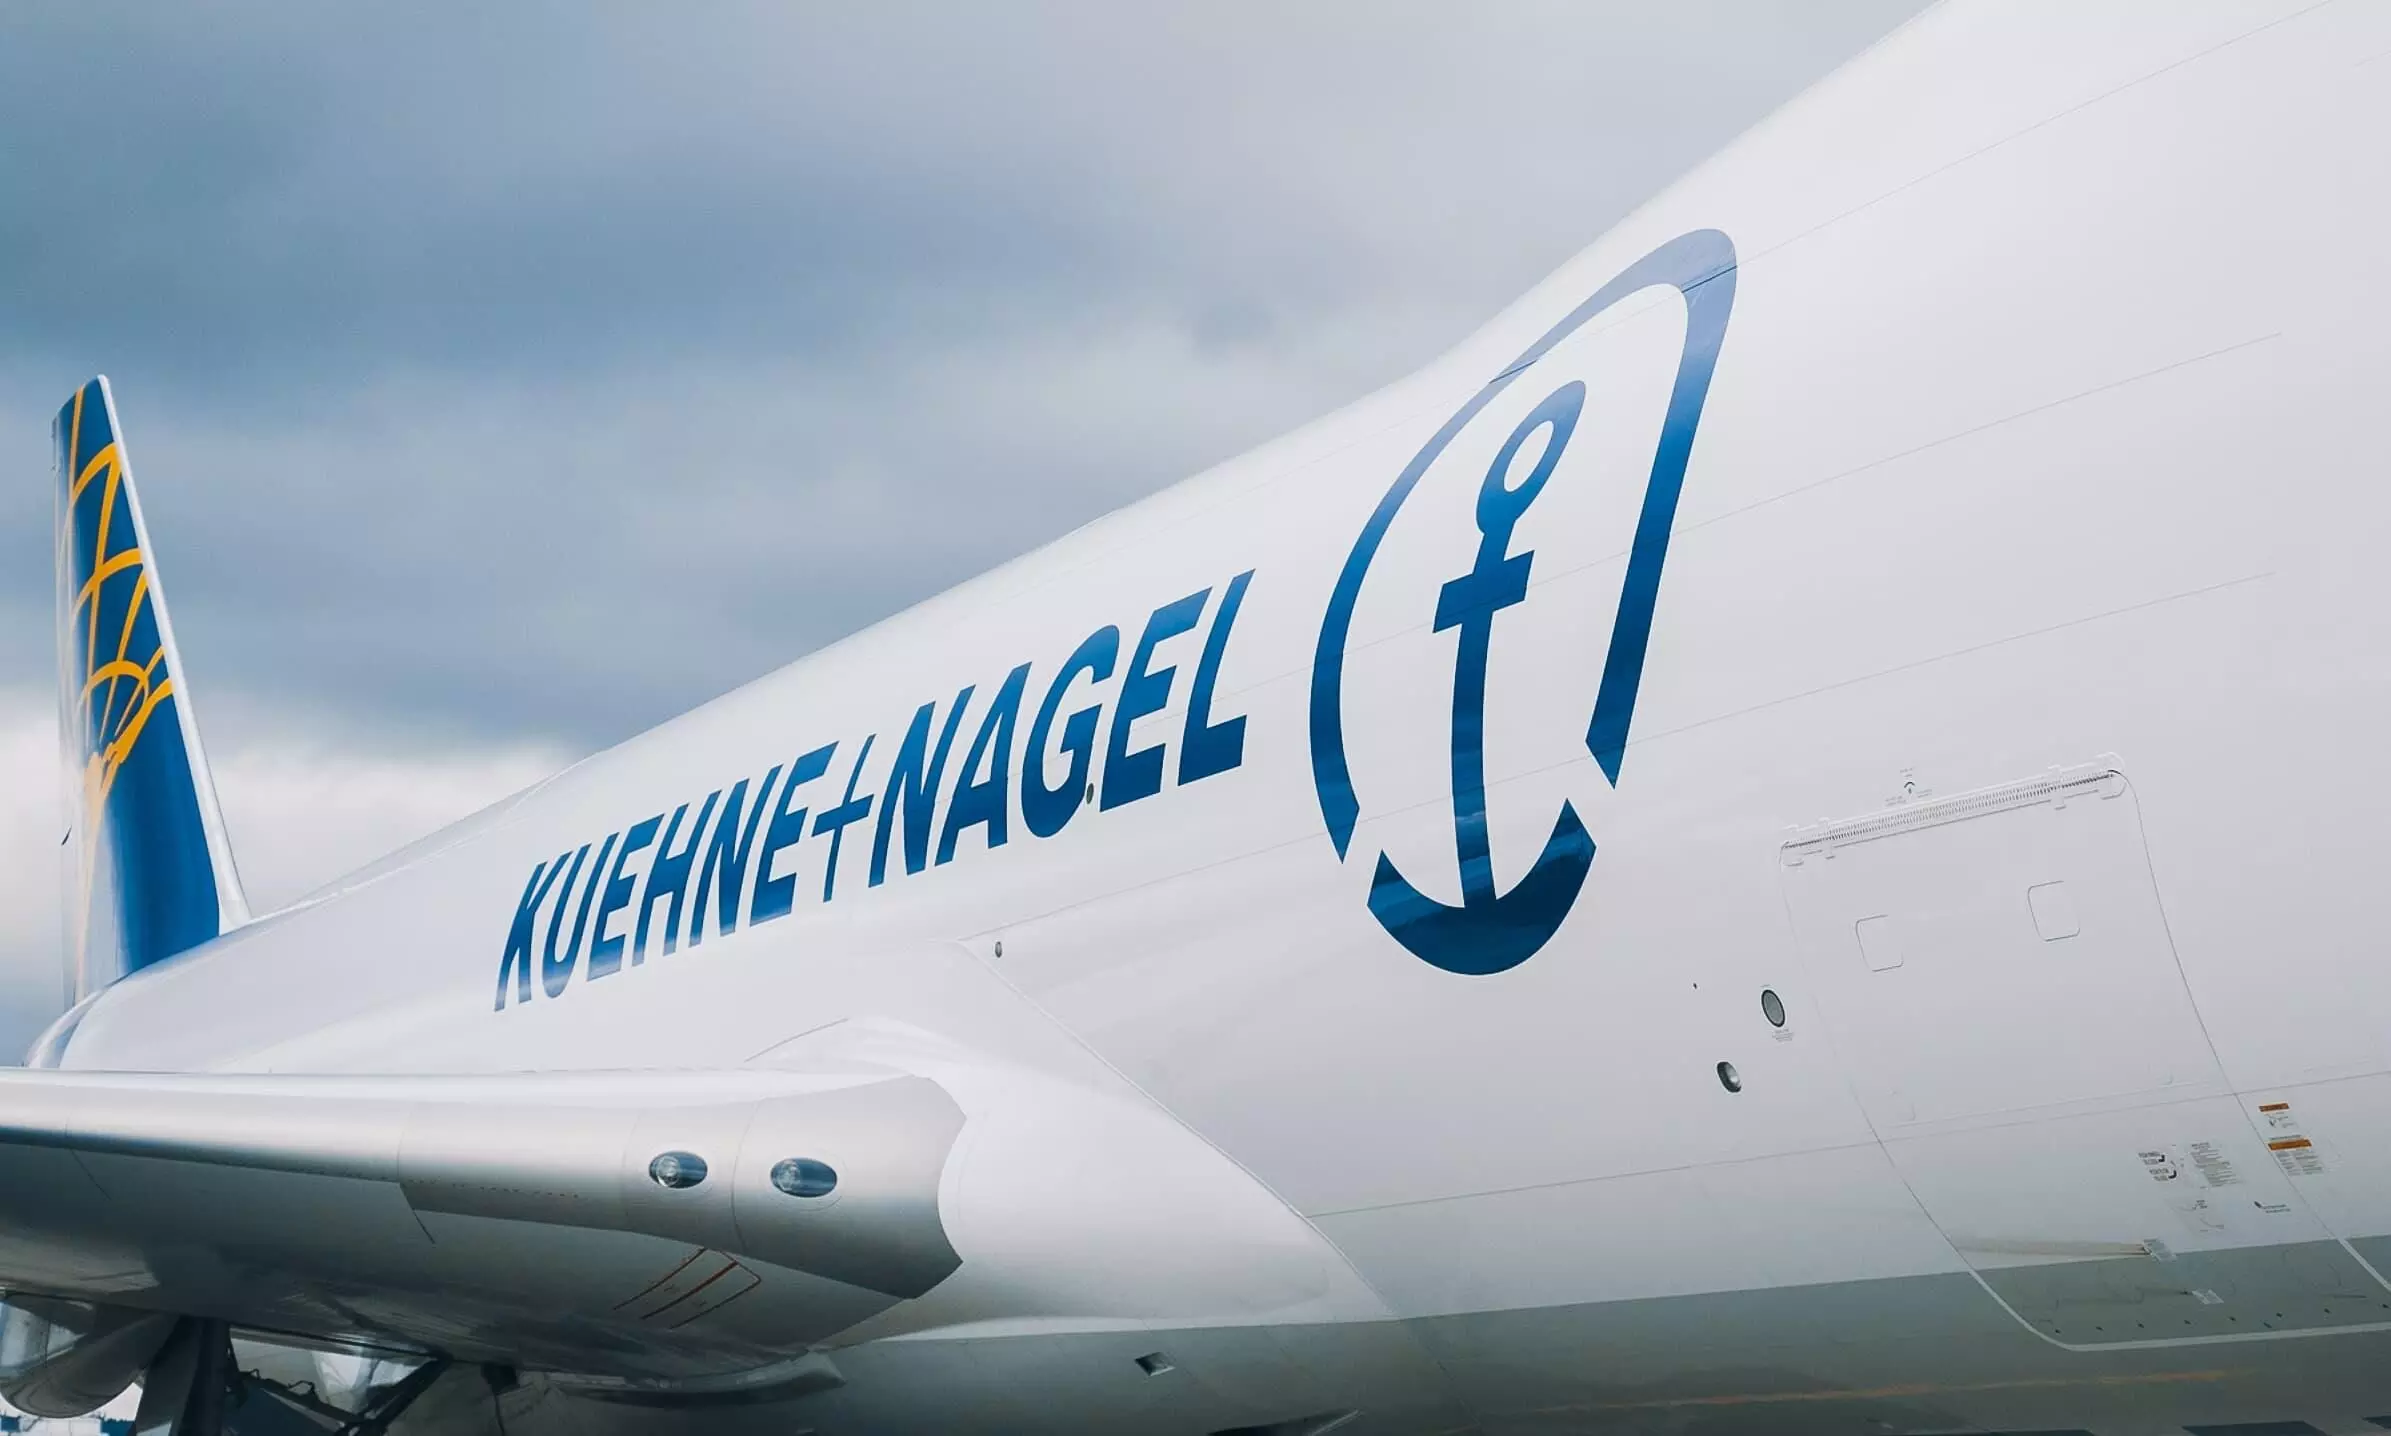 Kuehne+Nagel Q3 earnings down 53%